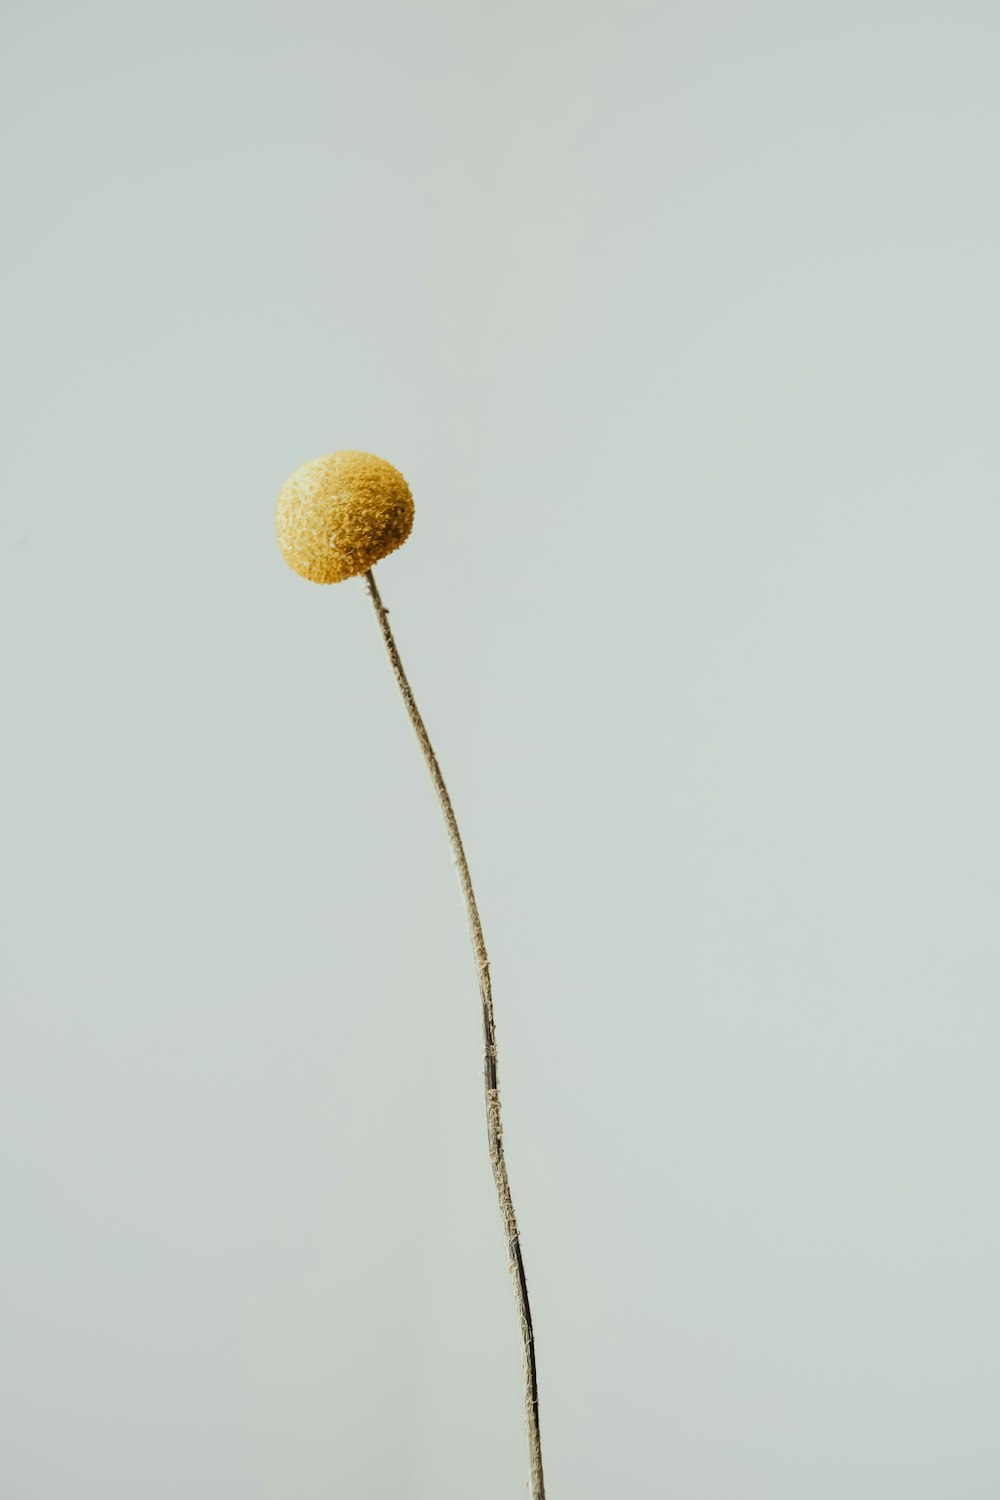 una pianta con una palla gialla sopra di essa